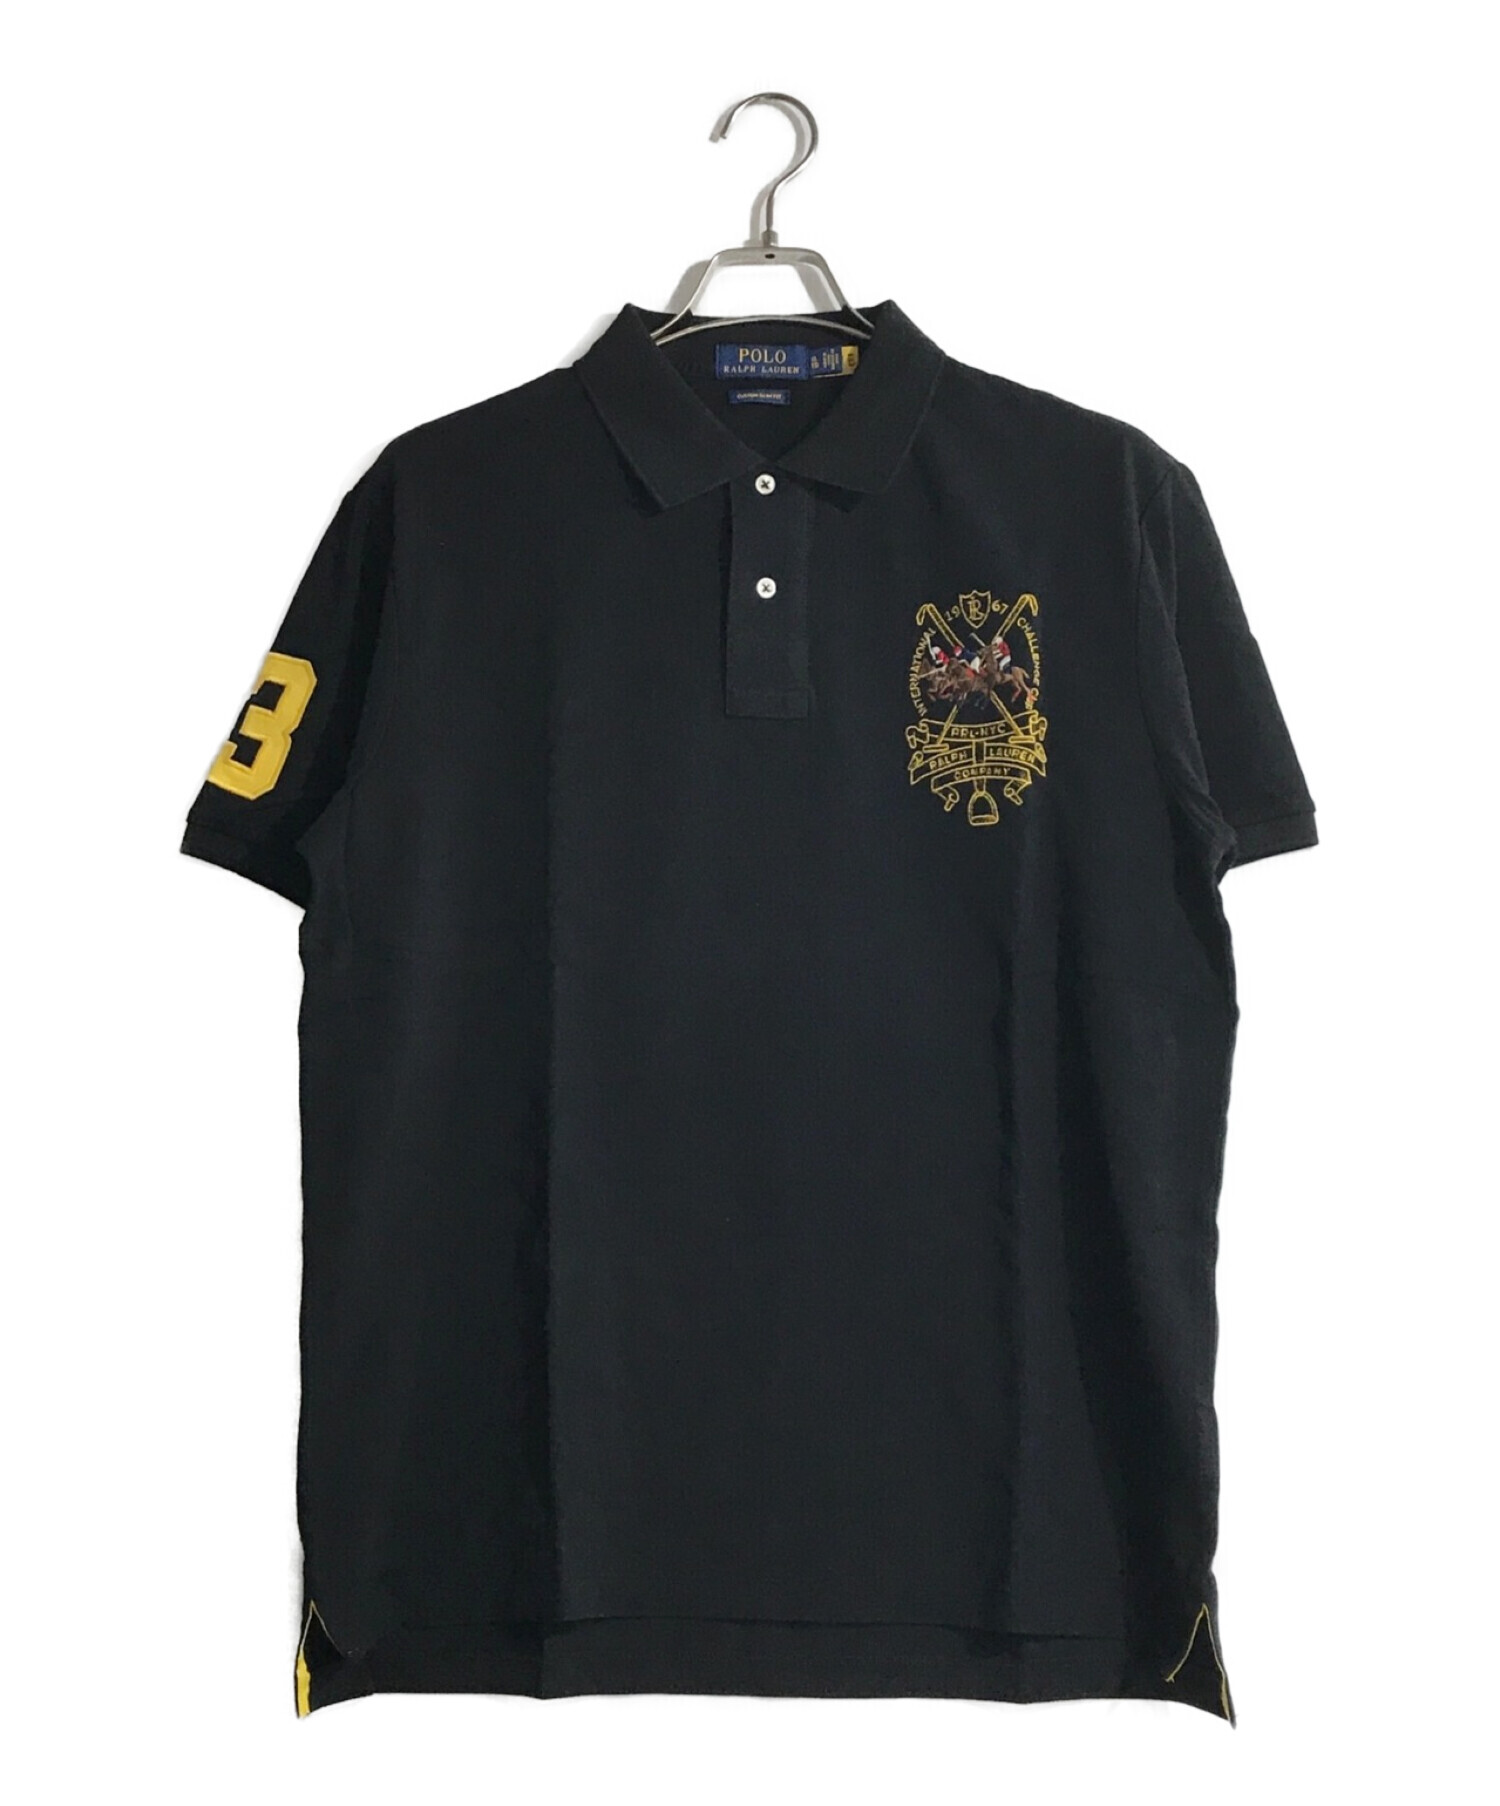 POLO RALPH LAUREN (ポロ・ラルフローレン) ポロシャツ ブラック サイズ:XL 未使用品